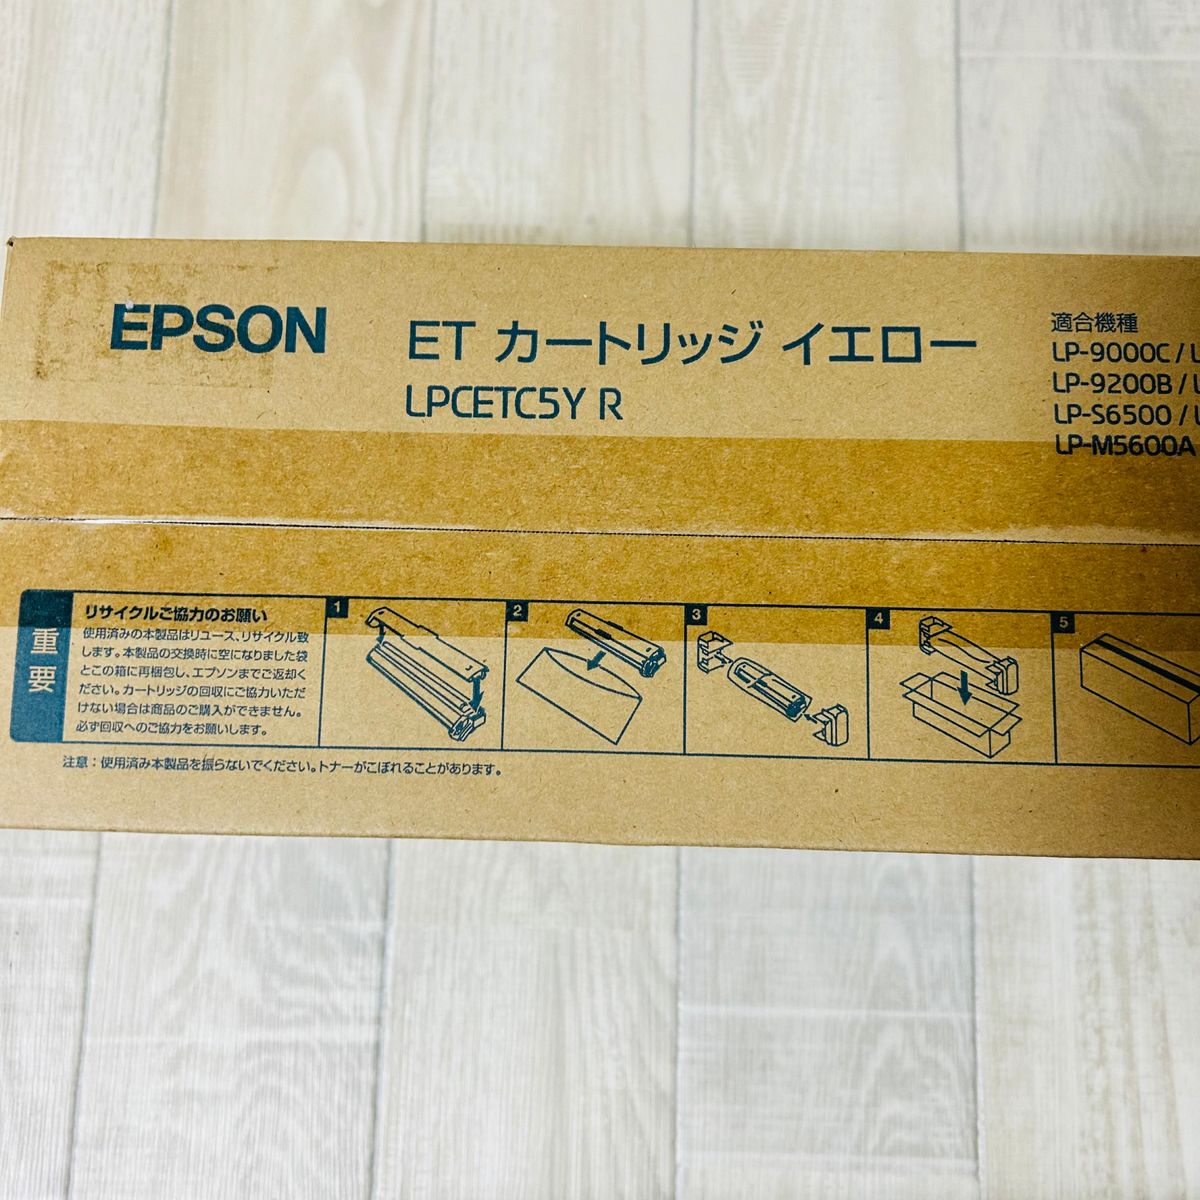 EPSON エプソン トナーカートリッジ ET カートリッジ セット